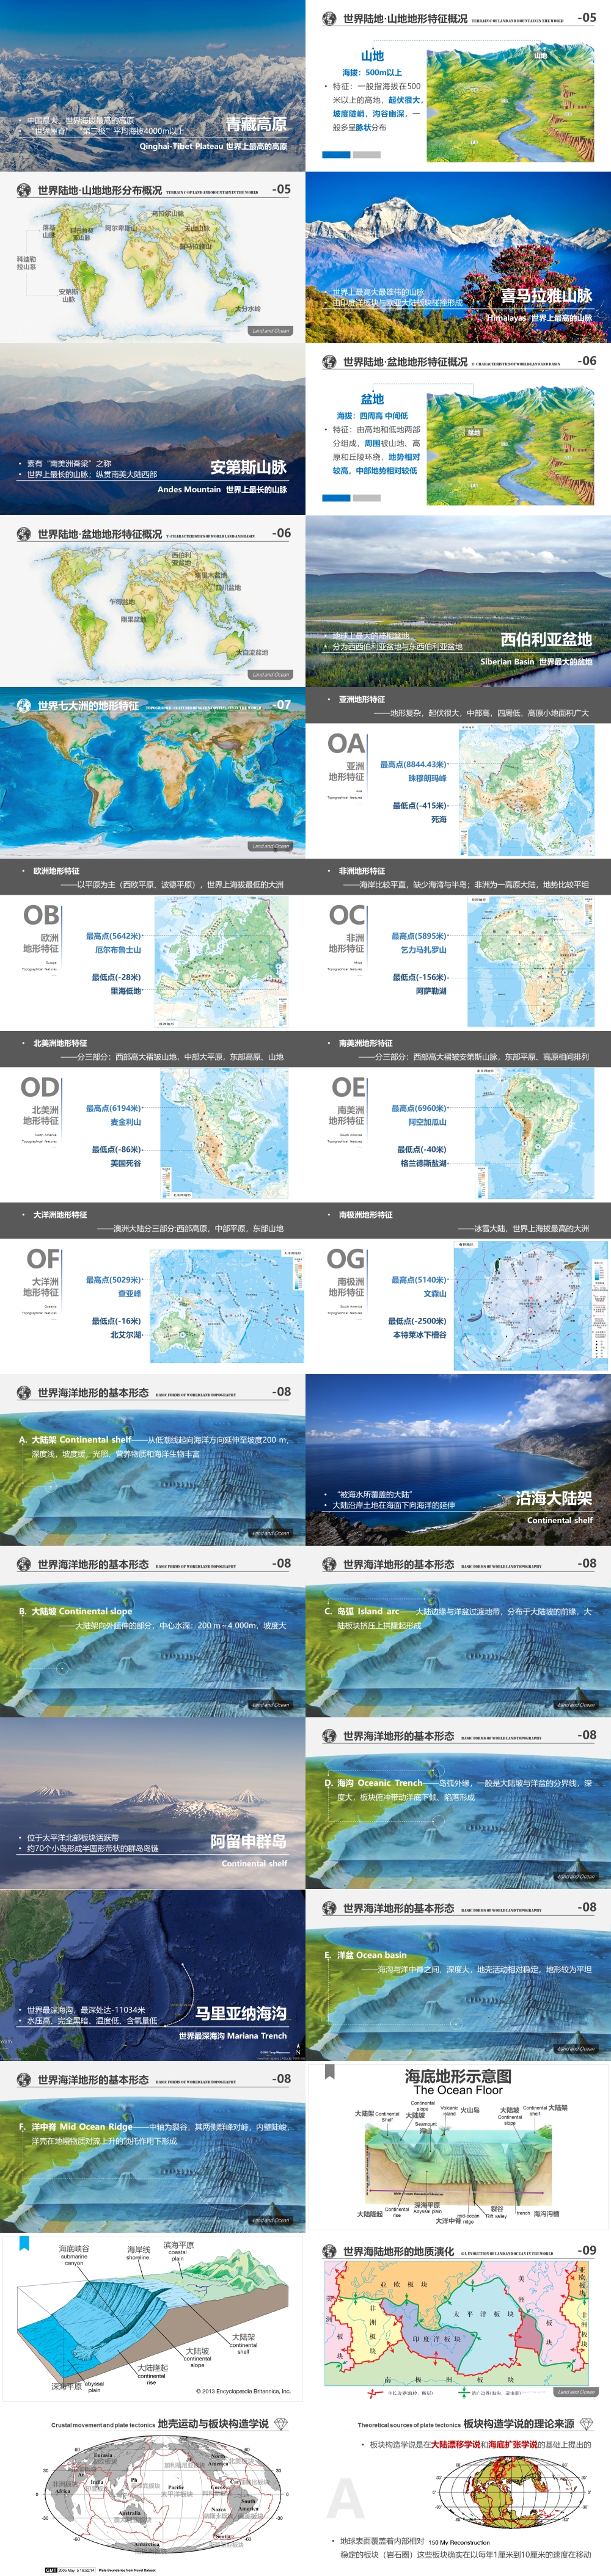 世界地理 第03讲 世界的陆地与海洋 Land -Ocean  [2020版]-1000px-02.jpg